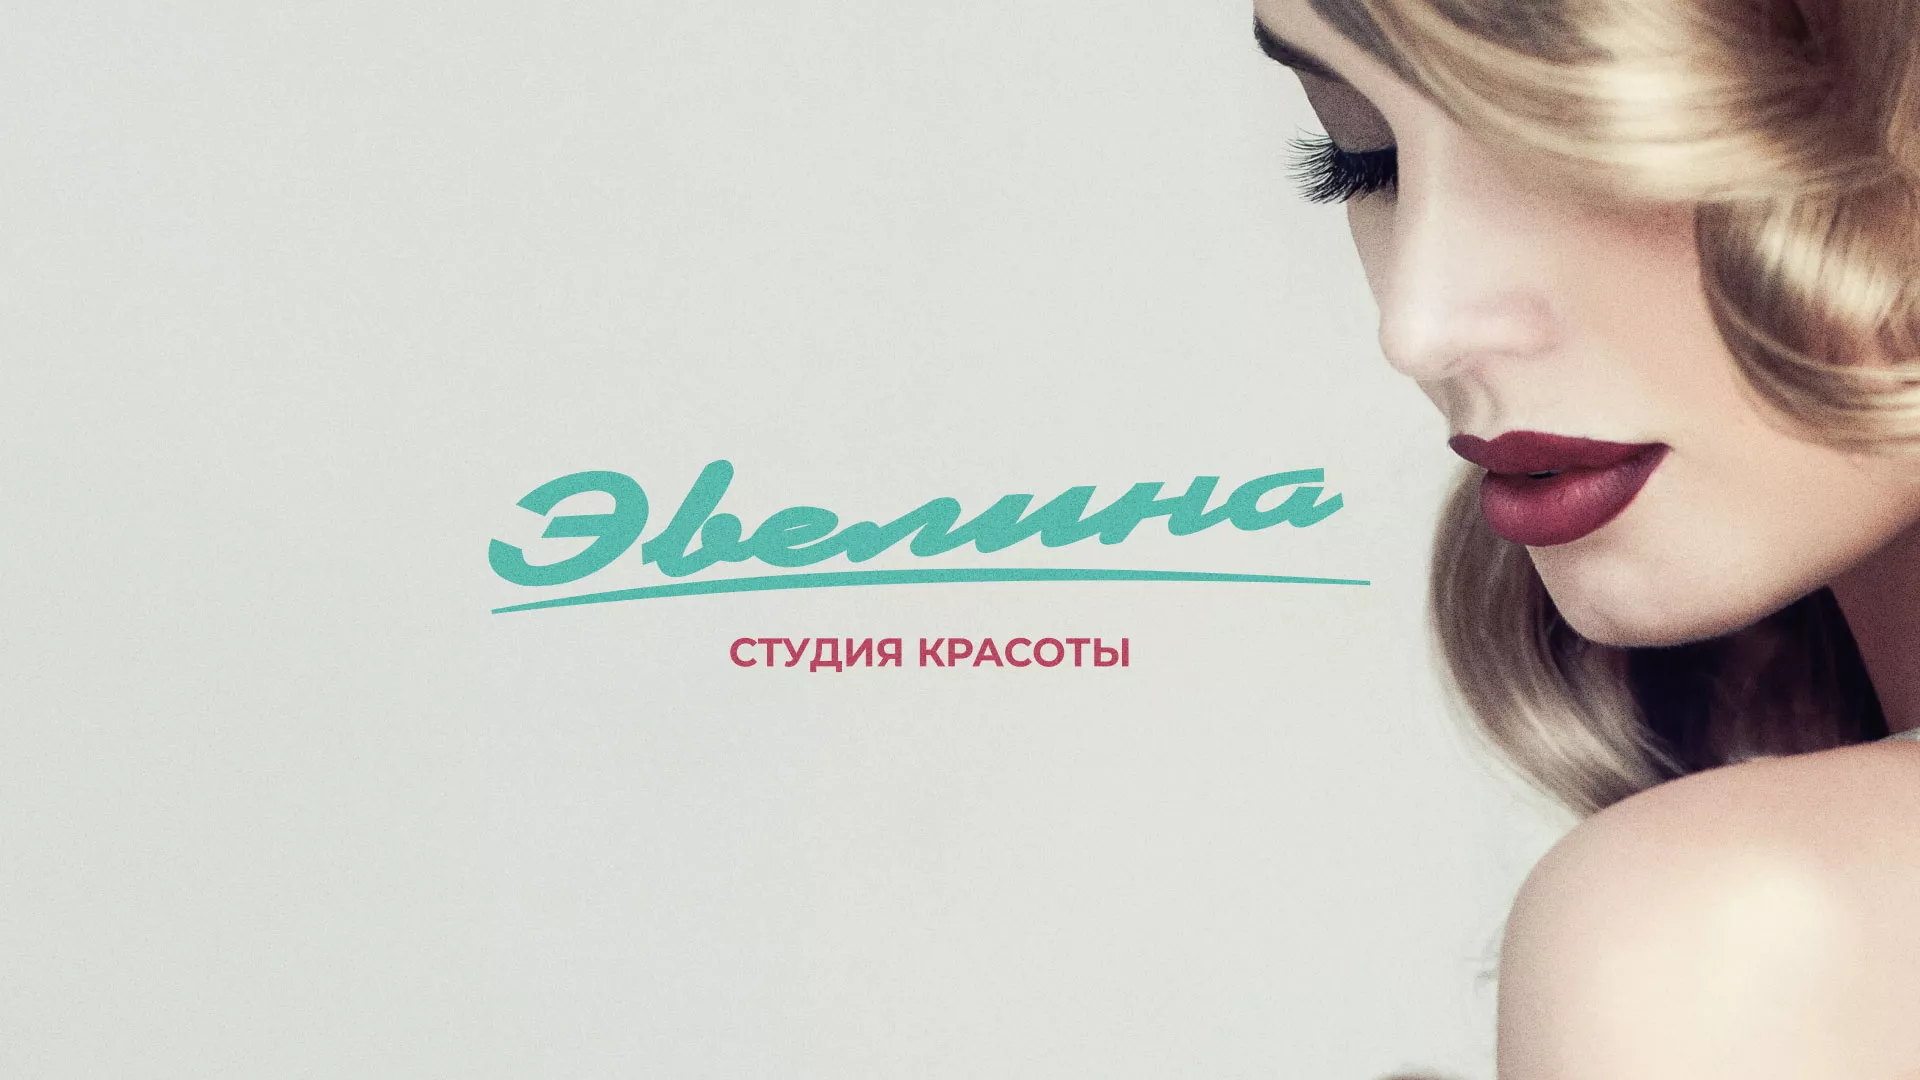 Разработка сайта для салона красоты «Эвелина» в Козьмодемьянске